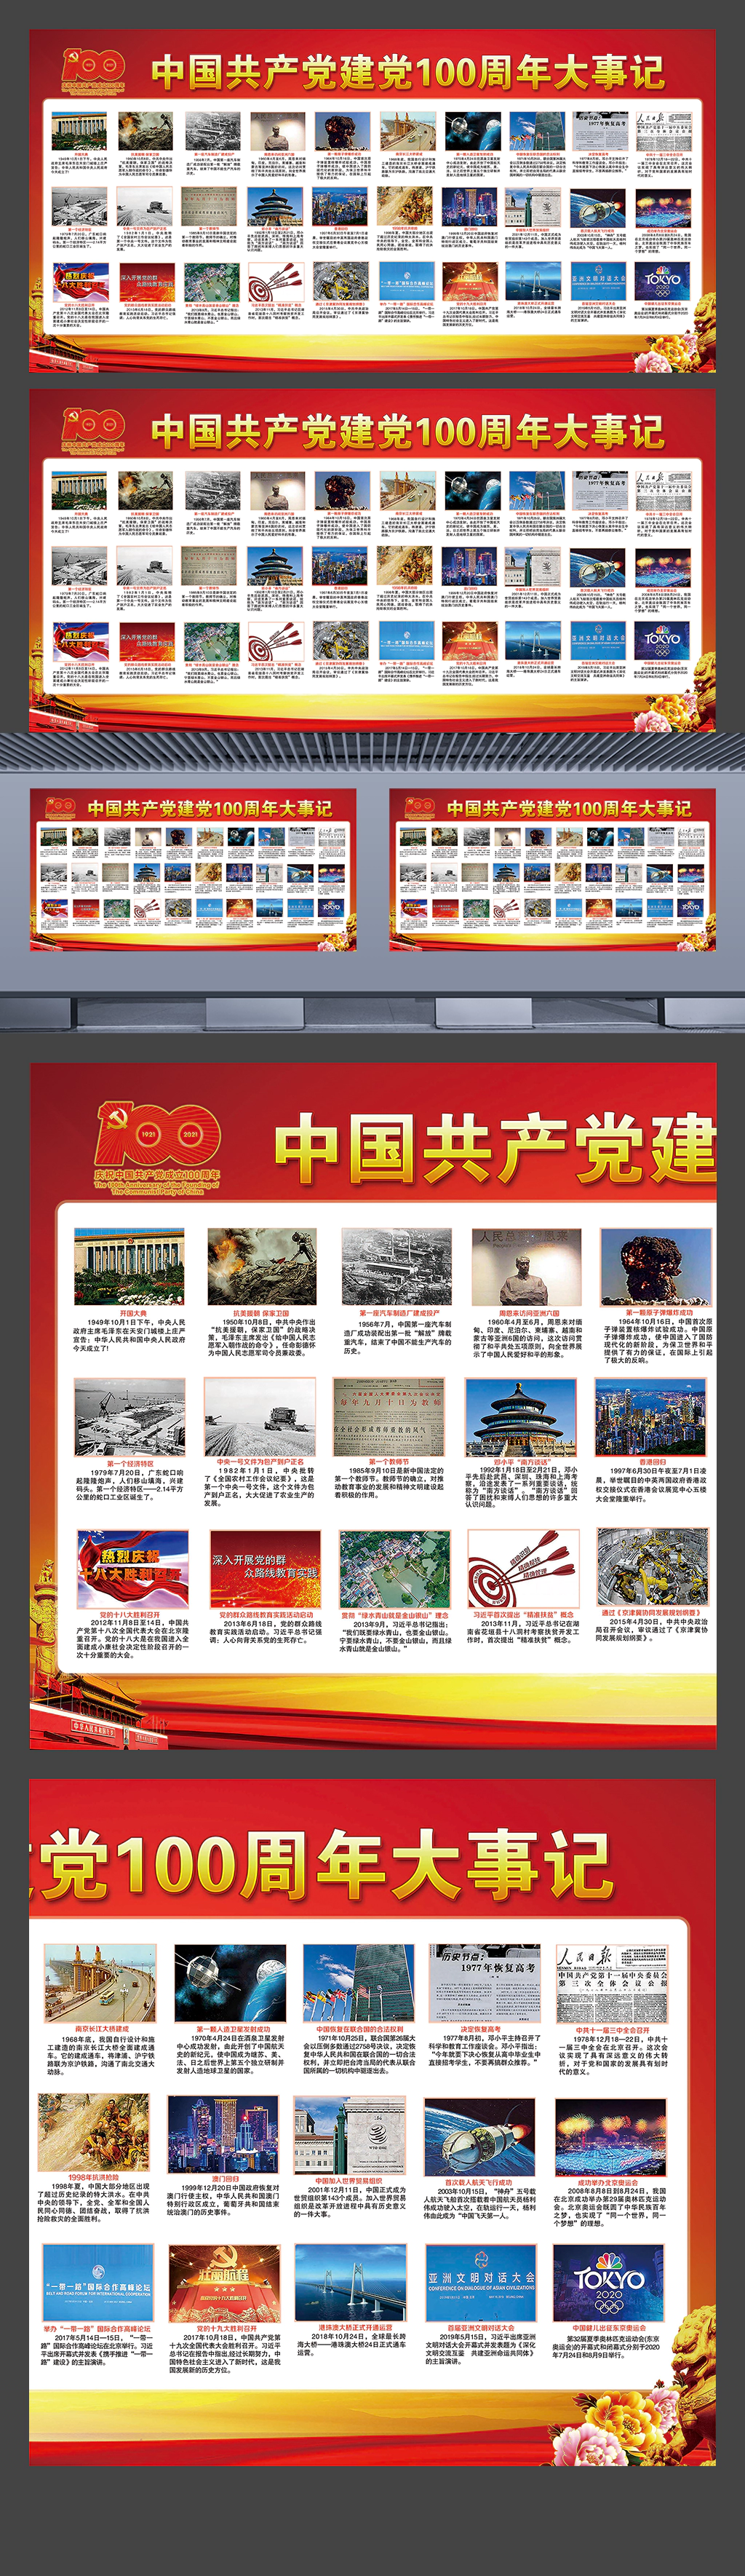 中国共产党建党一百周年大事记社区企业学校宣传展板